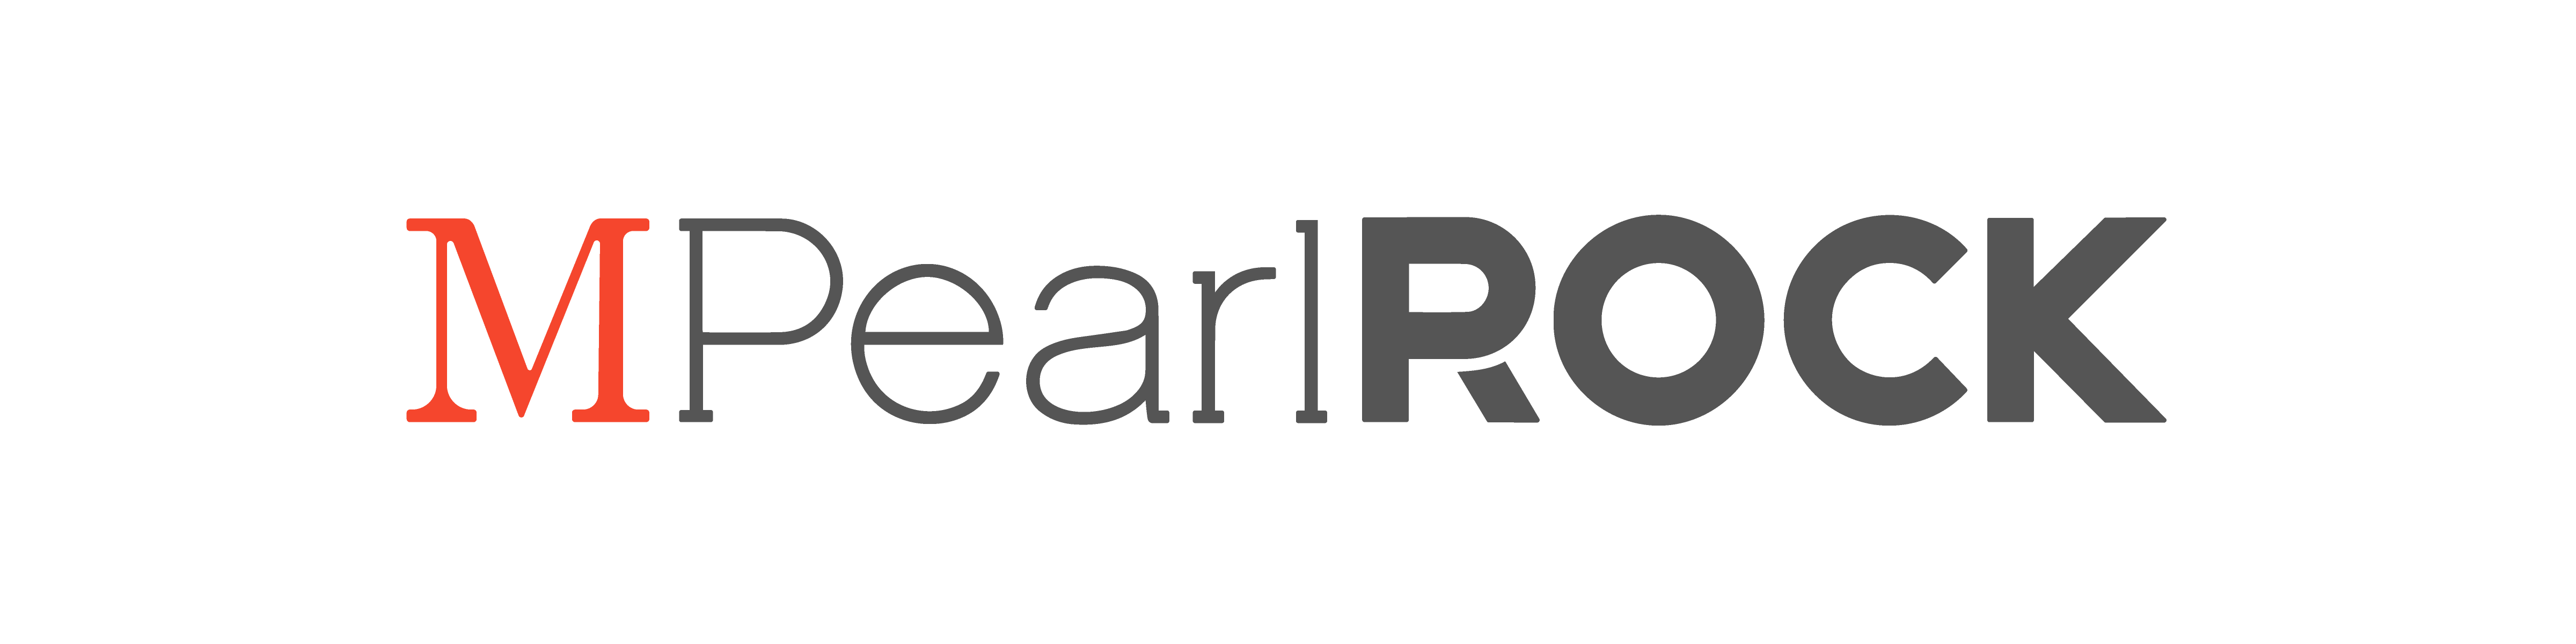 MPearlRock Logo